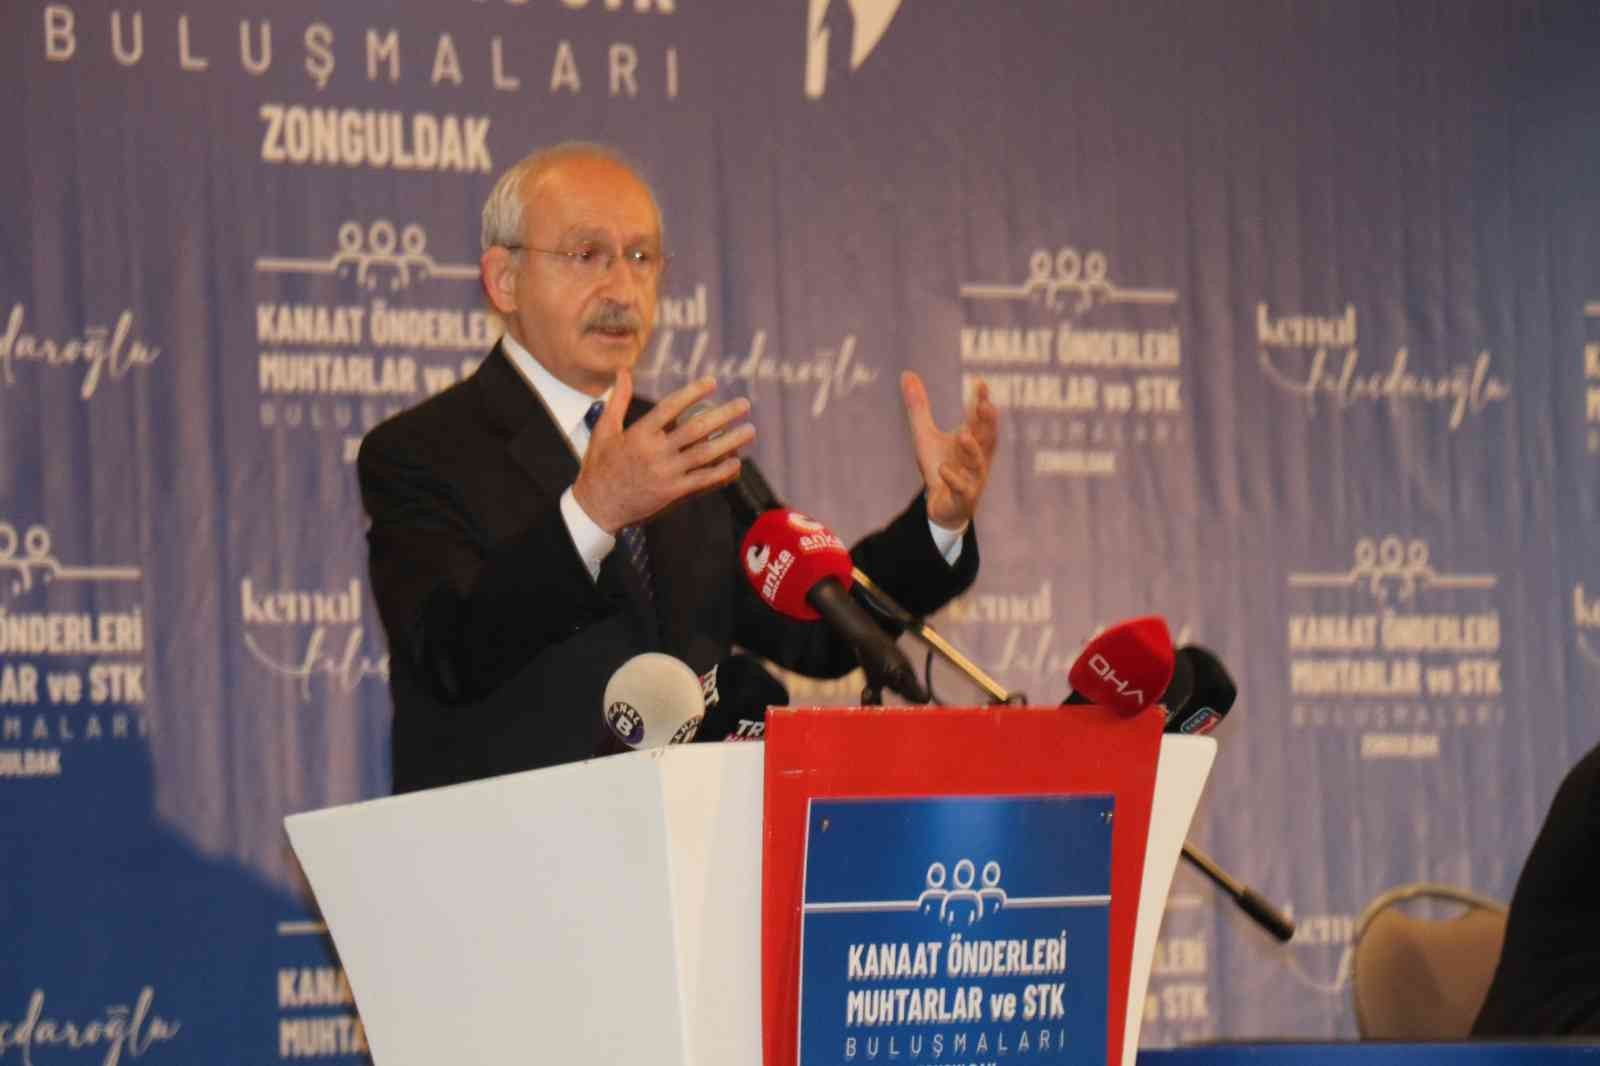 Kemal Kılıçdaroğlu’ndan özeleştiri: “Biz de sütten çıkmış ak kaşık değiliz”